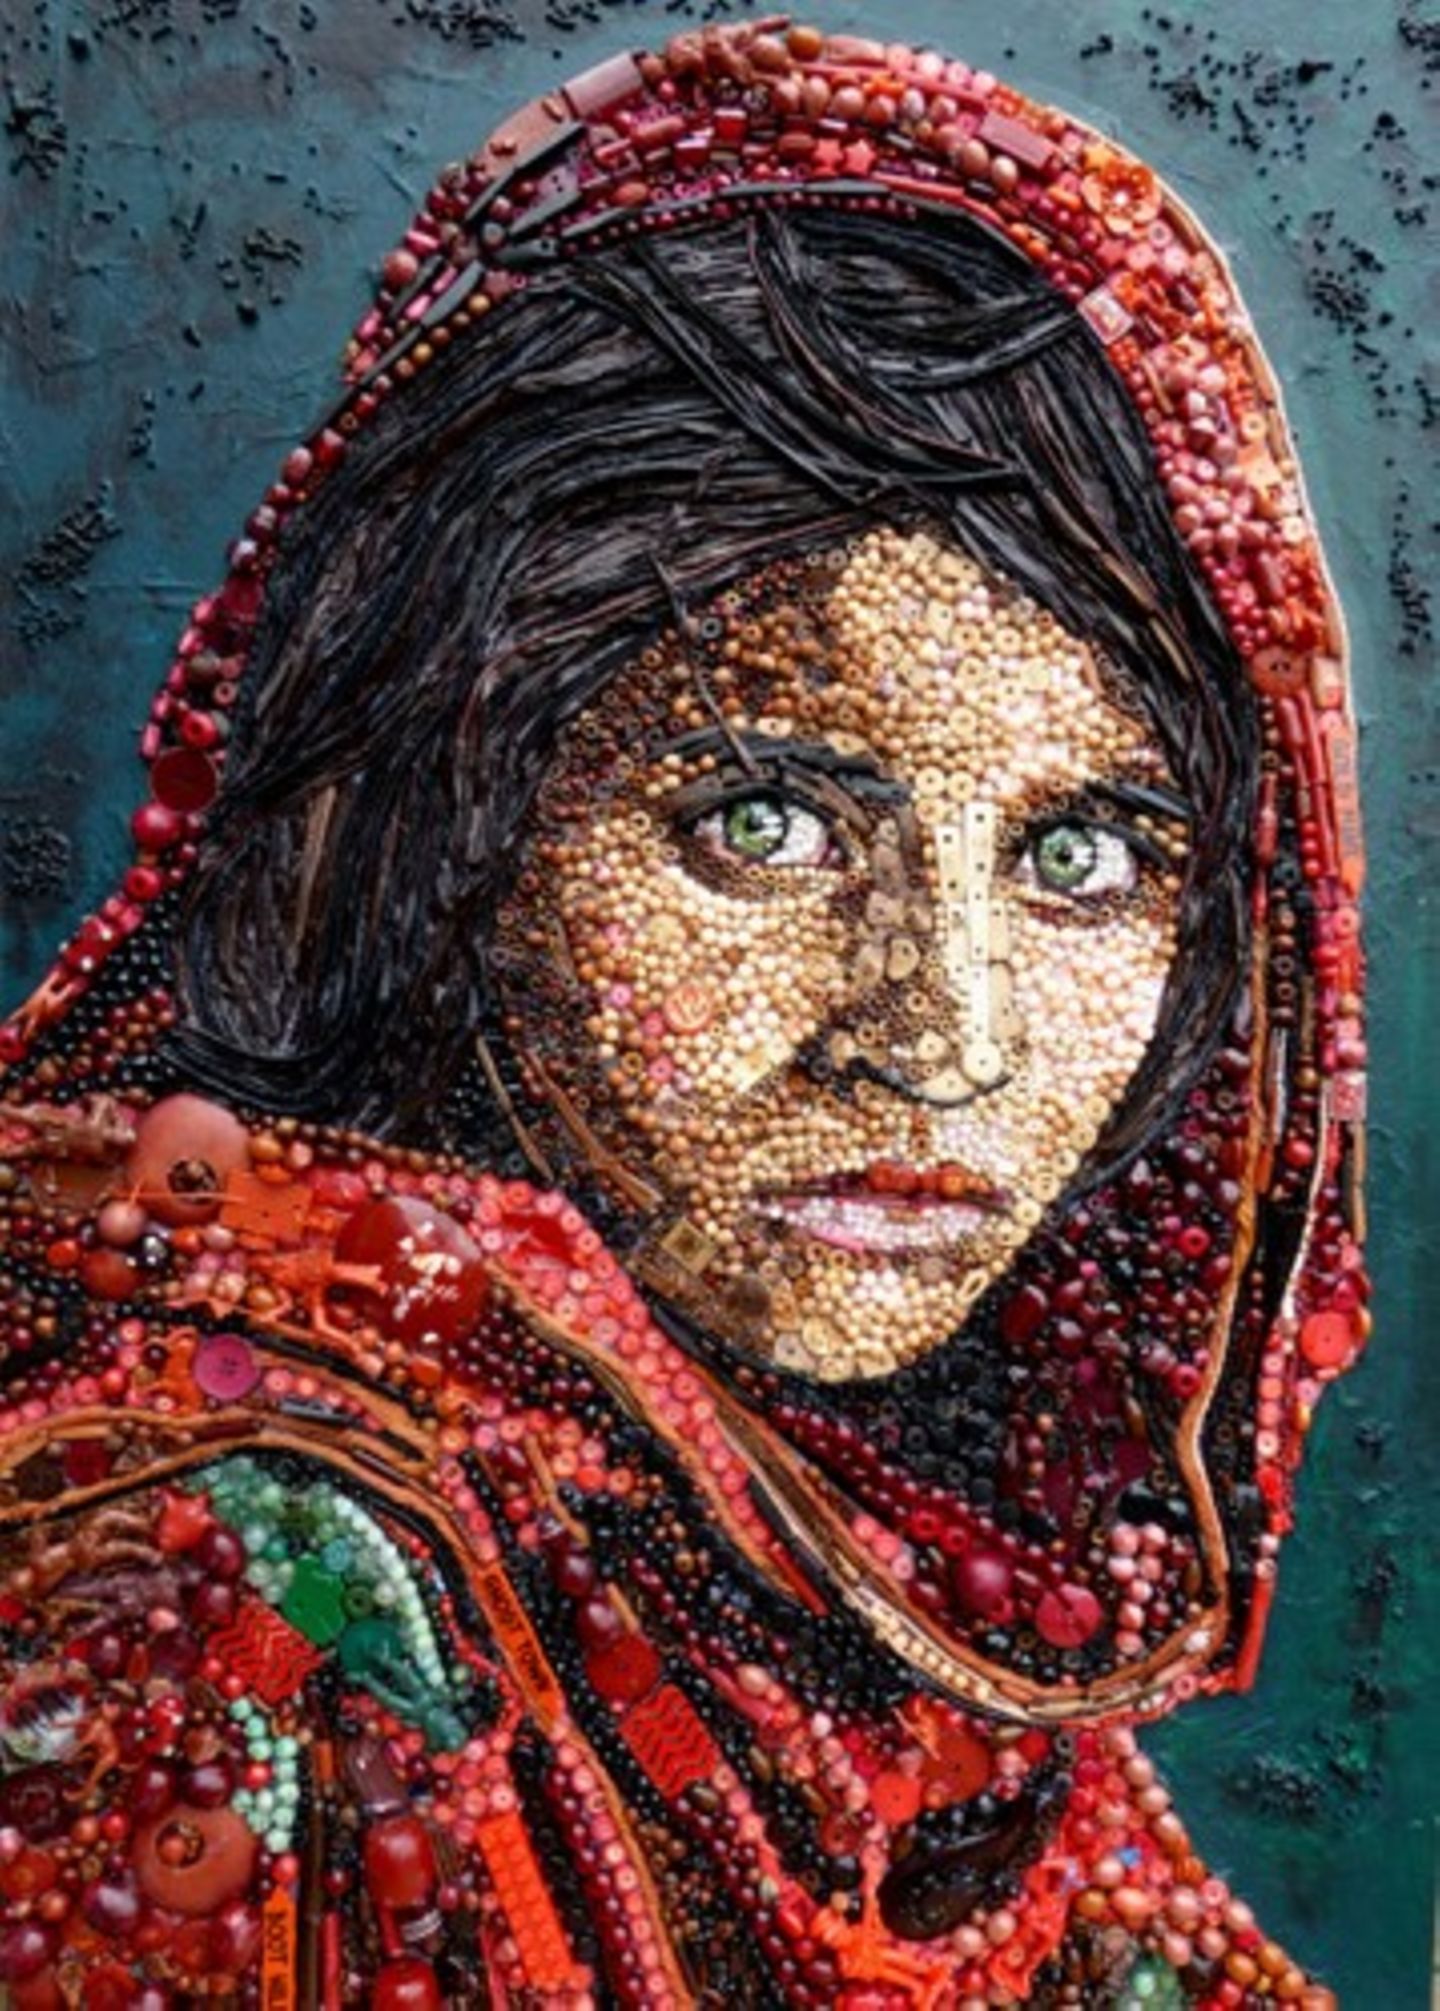 Das vielleicht berühmteste Pressefoto überhaupt: "Afghanisches Mädchen"